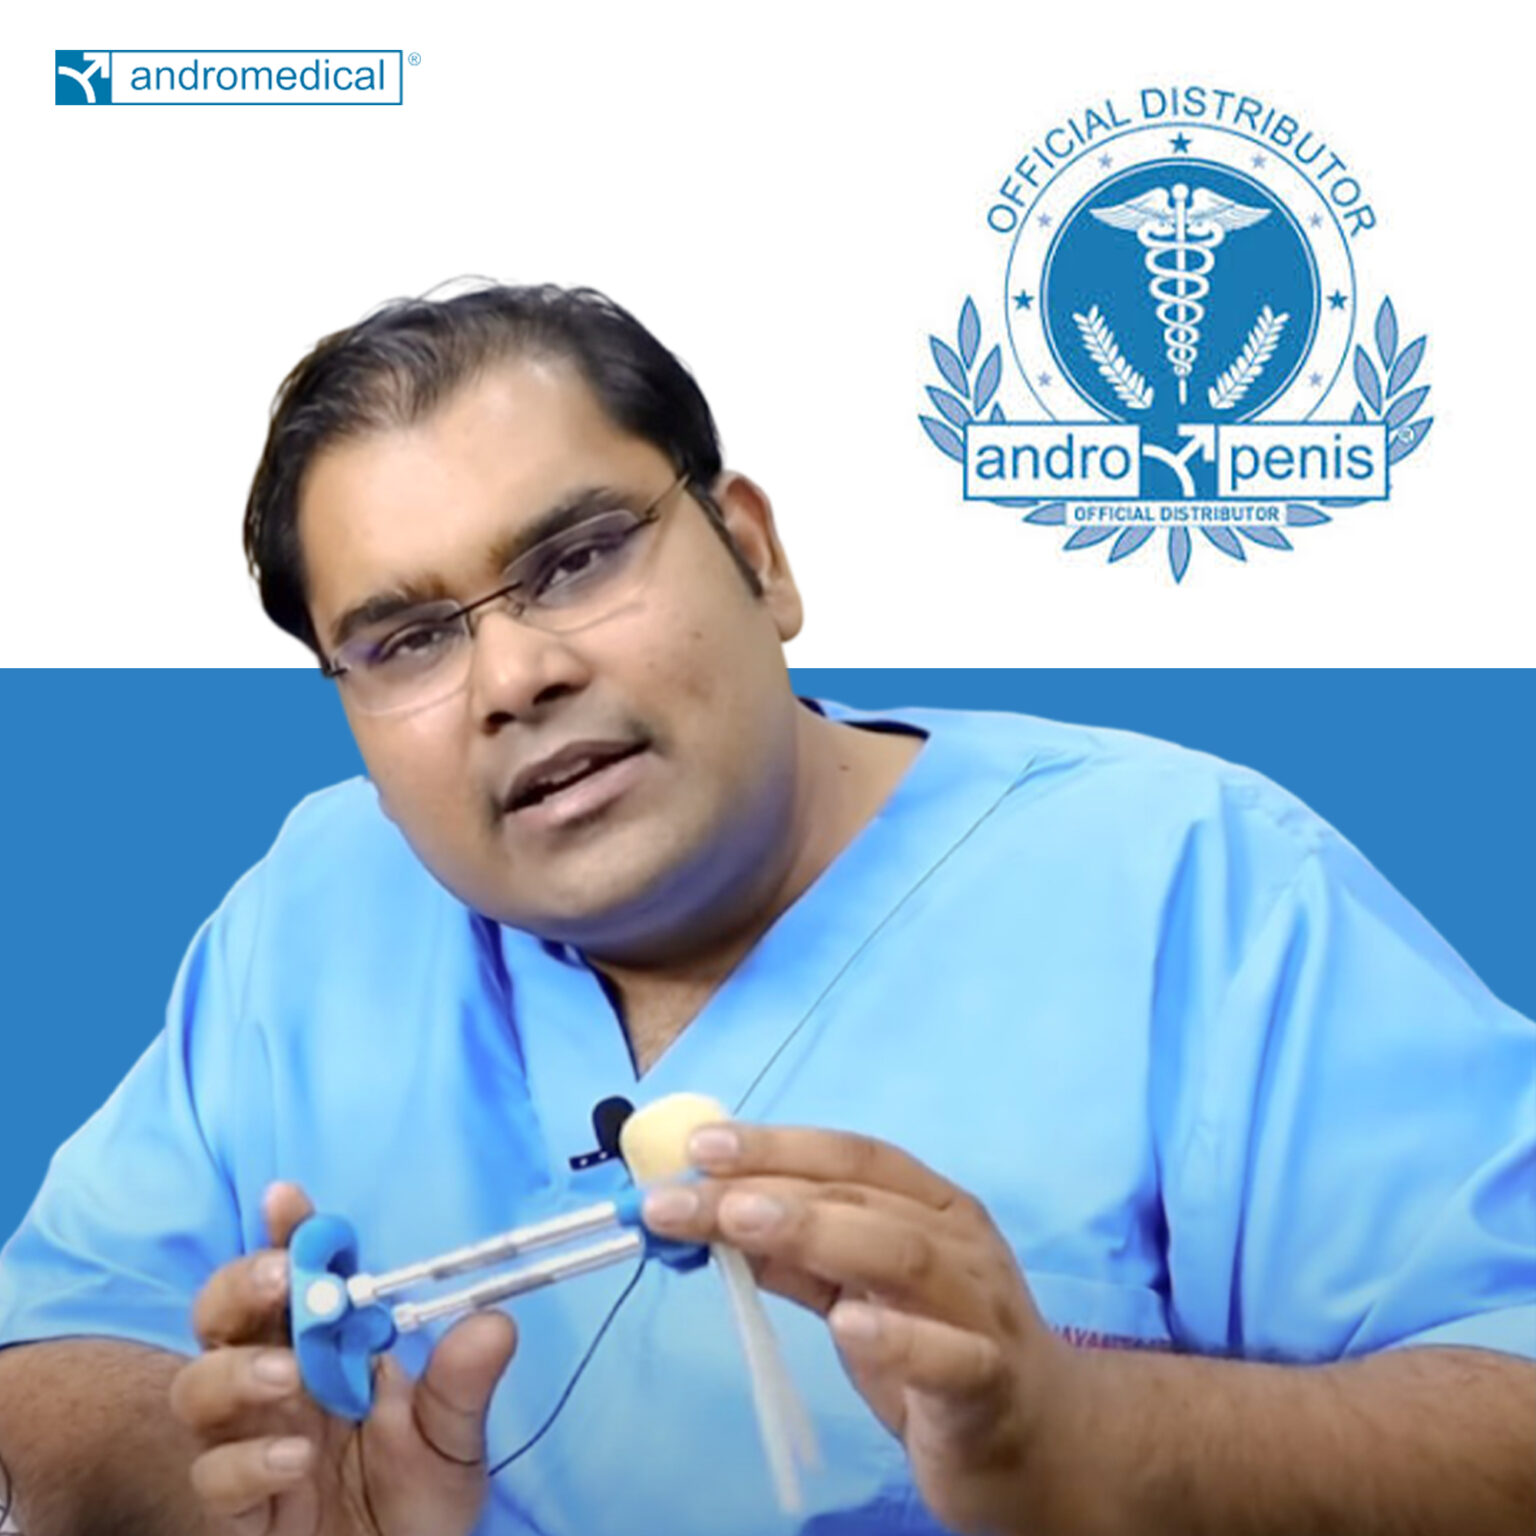 Andromedical Brand Ambassador - Dr. Vijayant Govinda Gupta